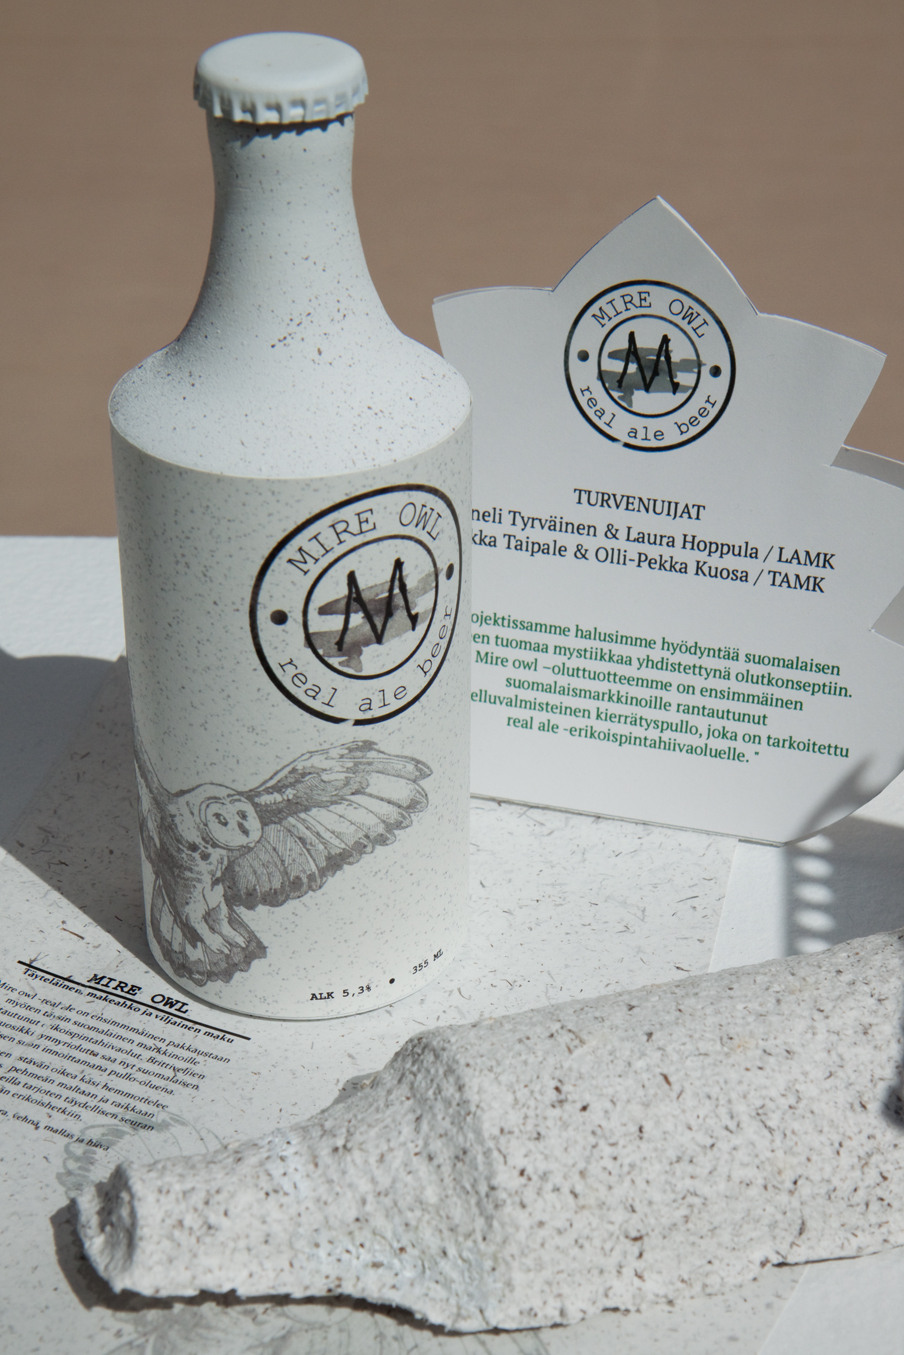 Kuvitteellisen suopöllöoluen pullo on valmistettu selluloosasta ja turpeesta Hiilinielu Design Studiossa. Kuva: Anna Kauppi